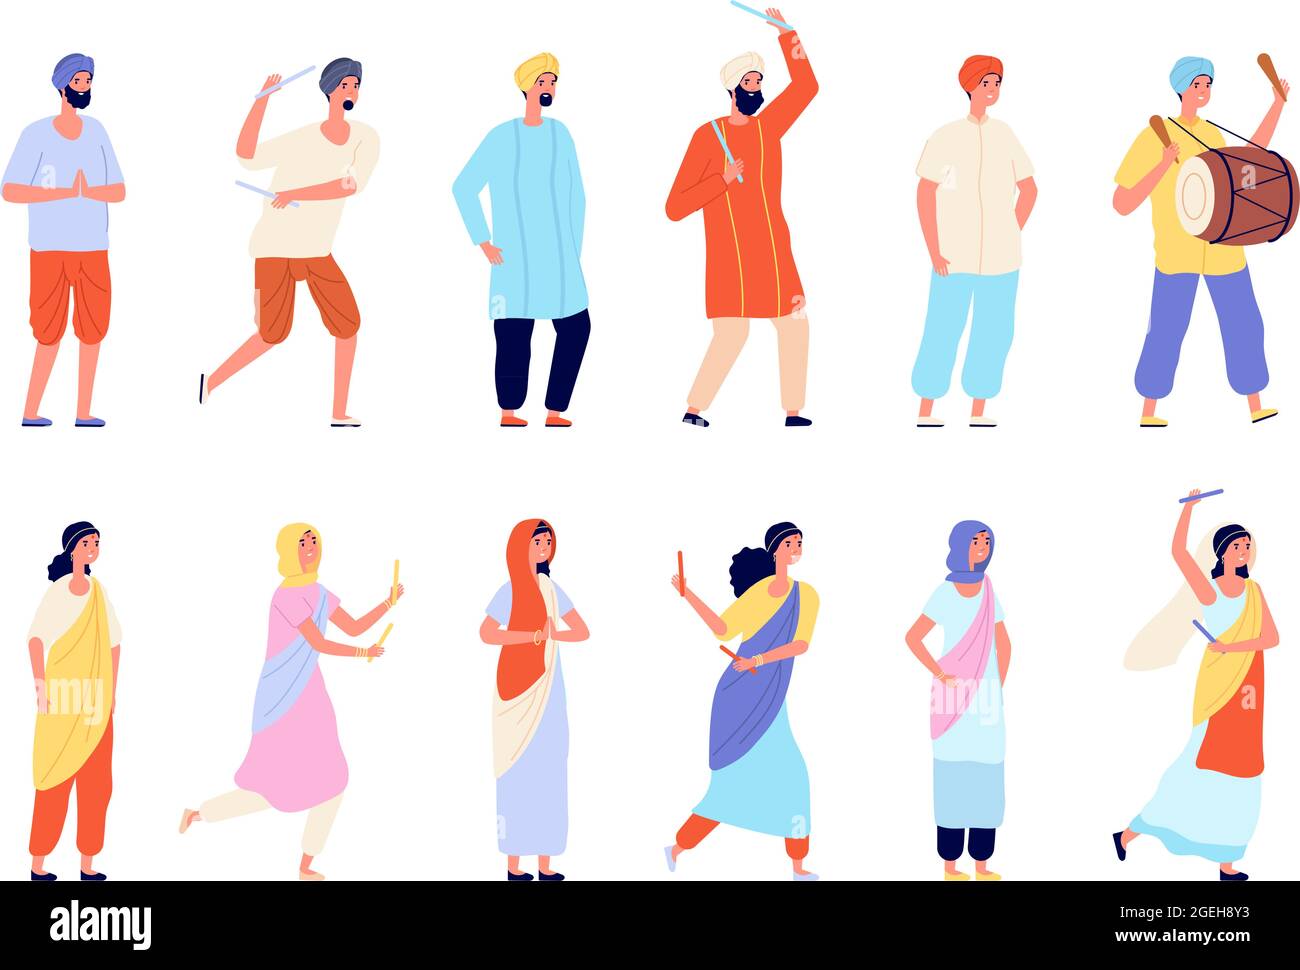 Indische Schriftzeichen. Männer kleiden, isolierte Menschen tragen traditionelle Kleidung. Glücklich asiatische Tänzerin und Straßenkünstler, indien Personen Gruppe Vektor-Set Stock Vektor